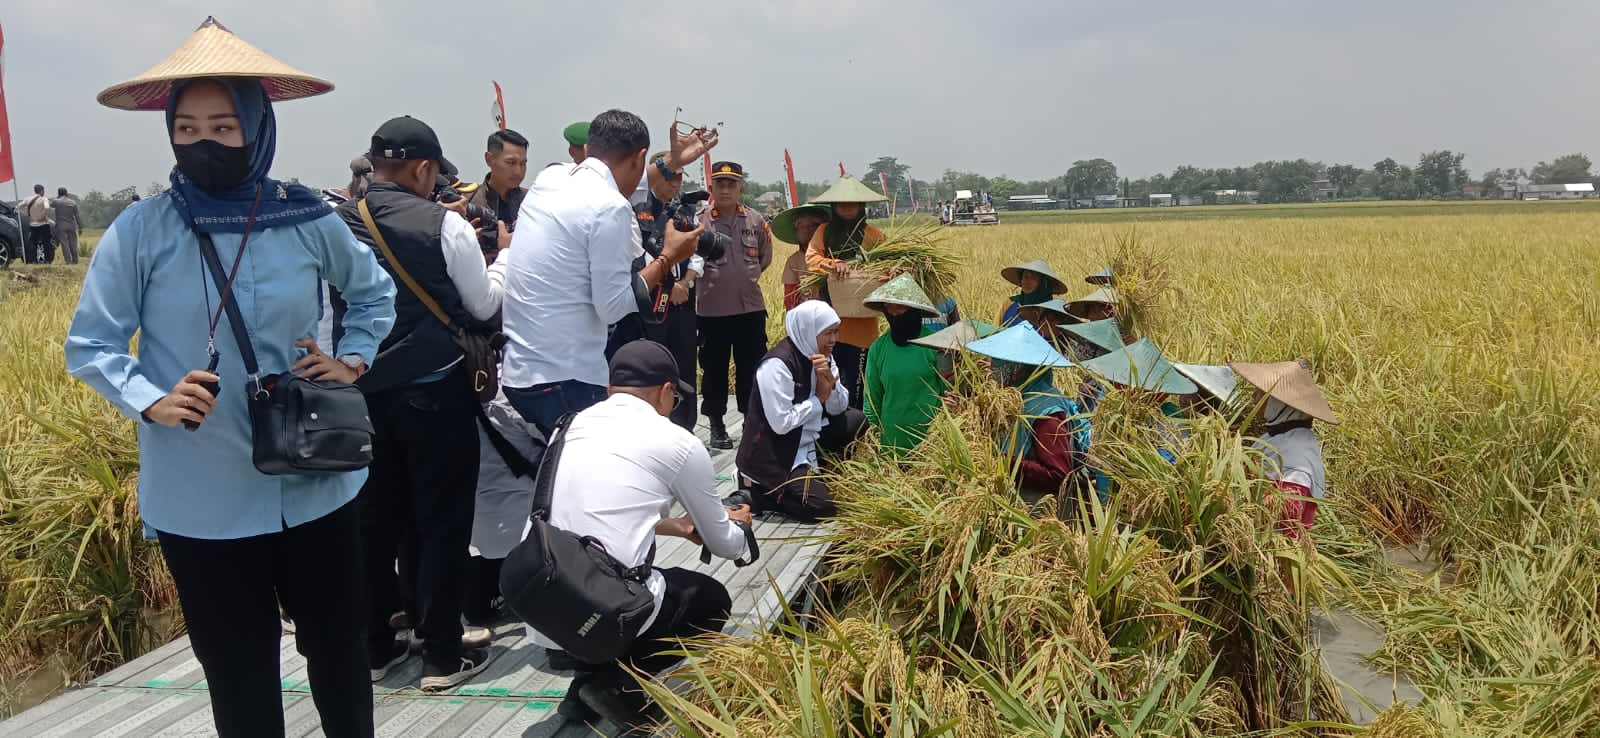 Sulit Dapat Pupuk dan Sawah Kebanjiran, Petani Tuban Curhat ke Gubernur Jatim